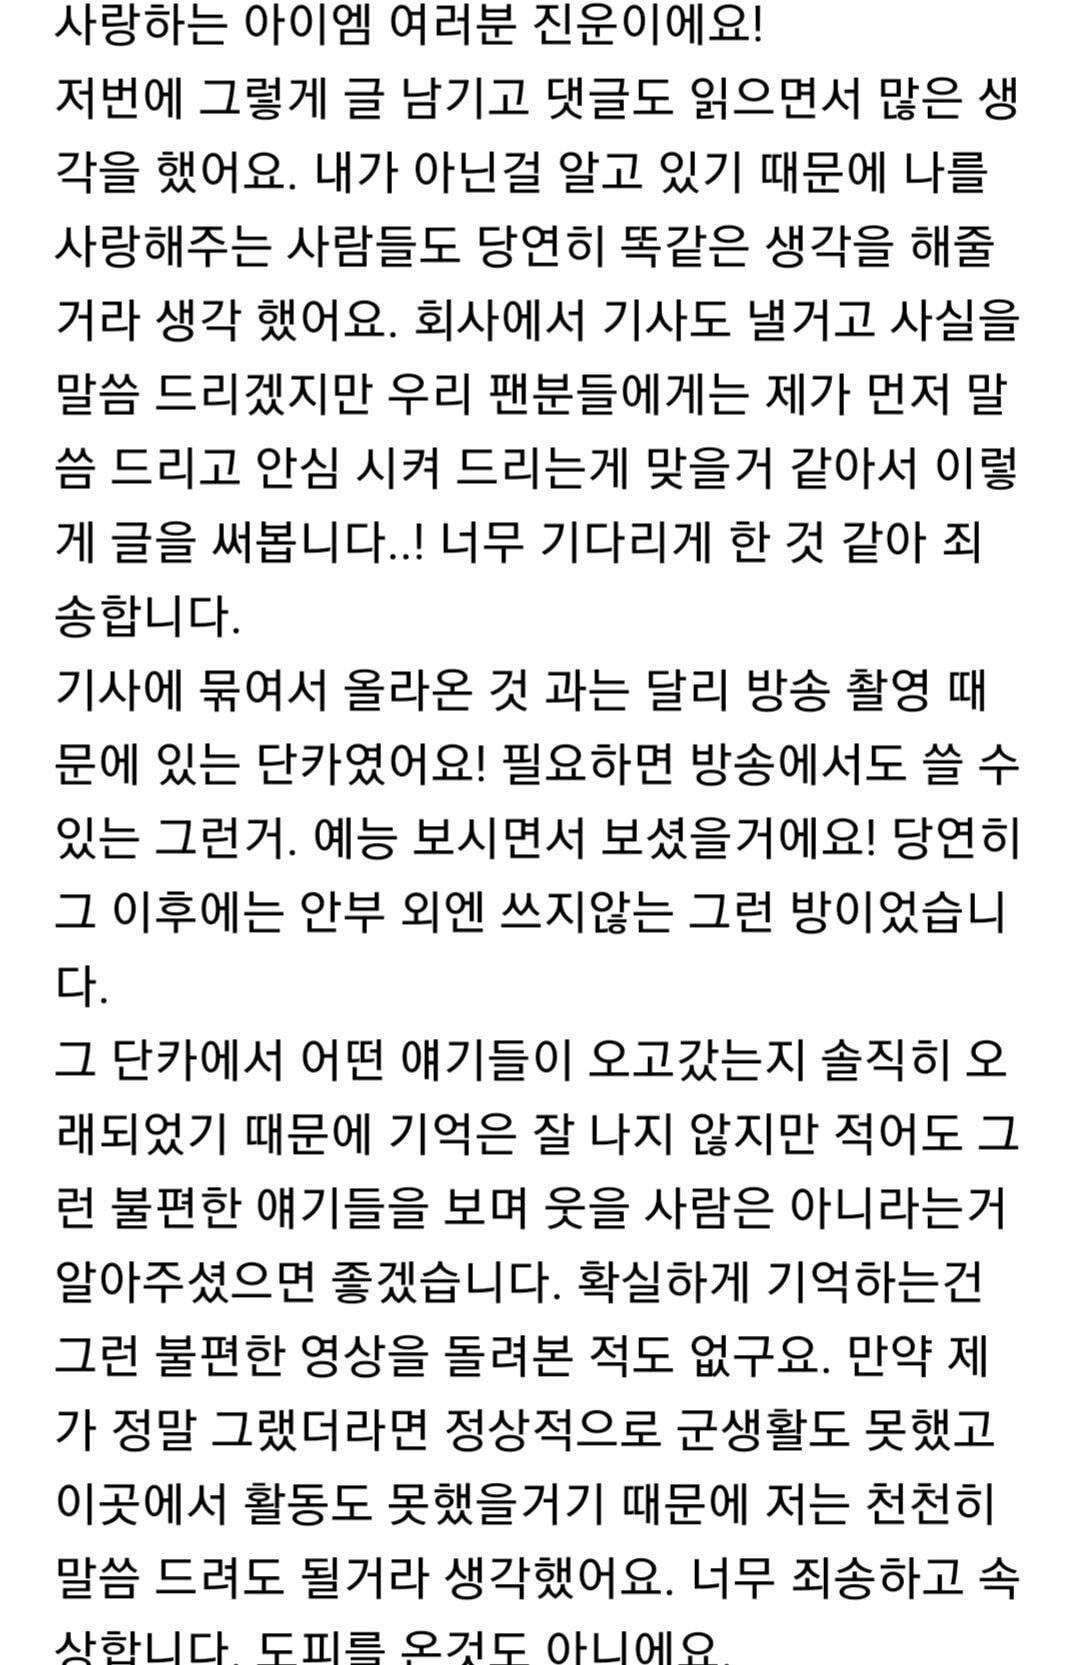 경리남친 정진운의 정준영 단톡방 해명